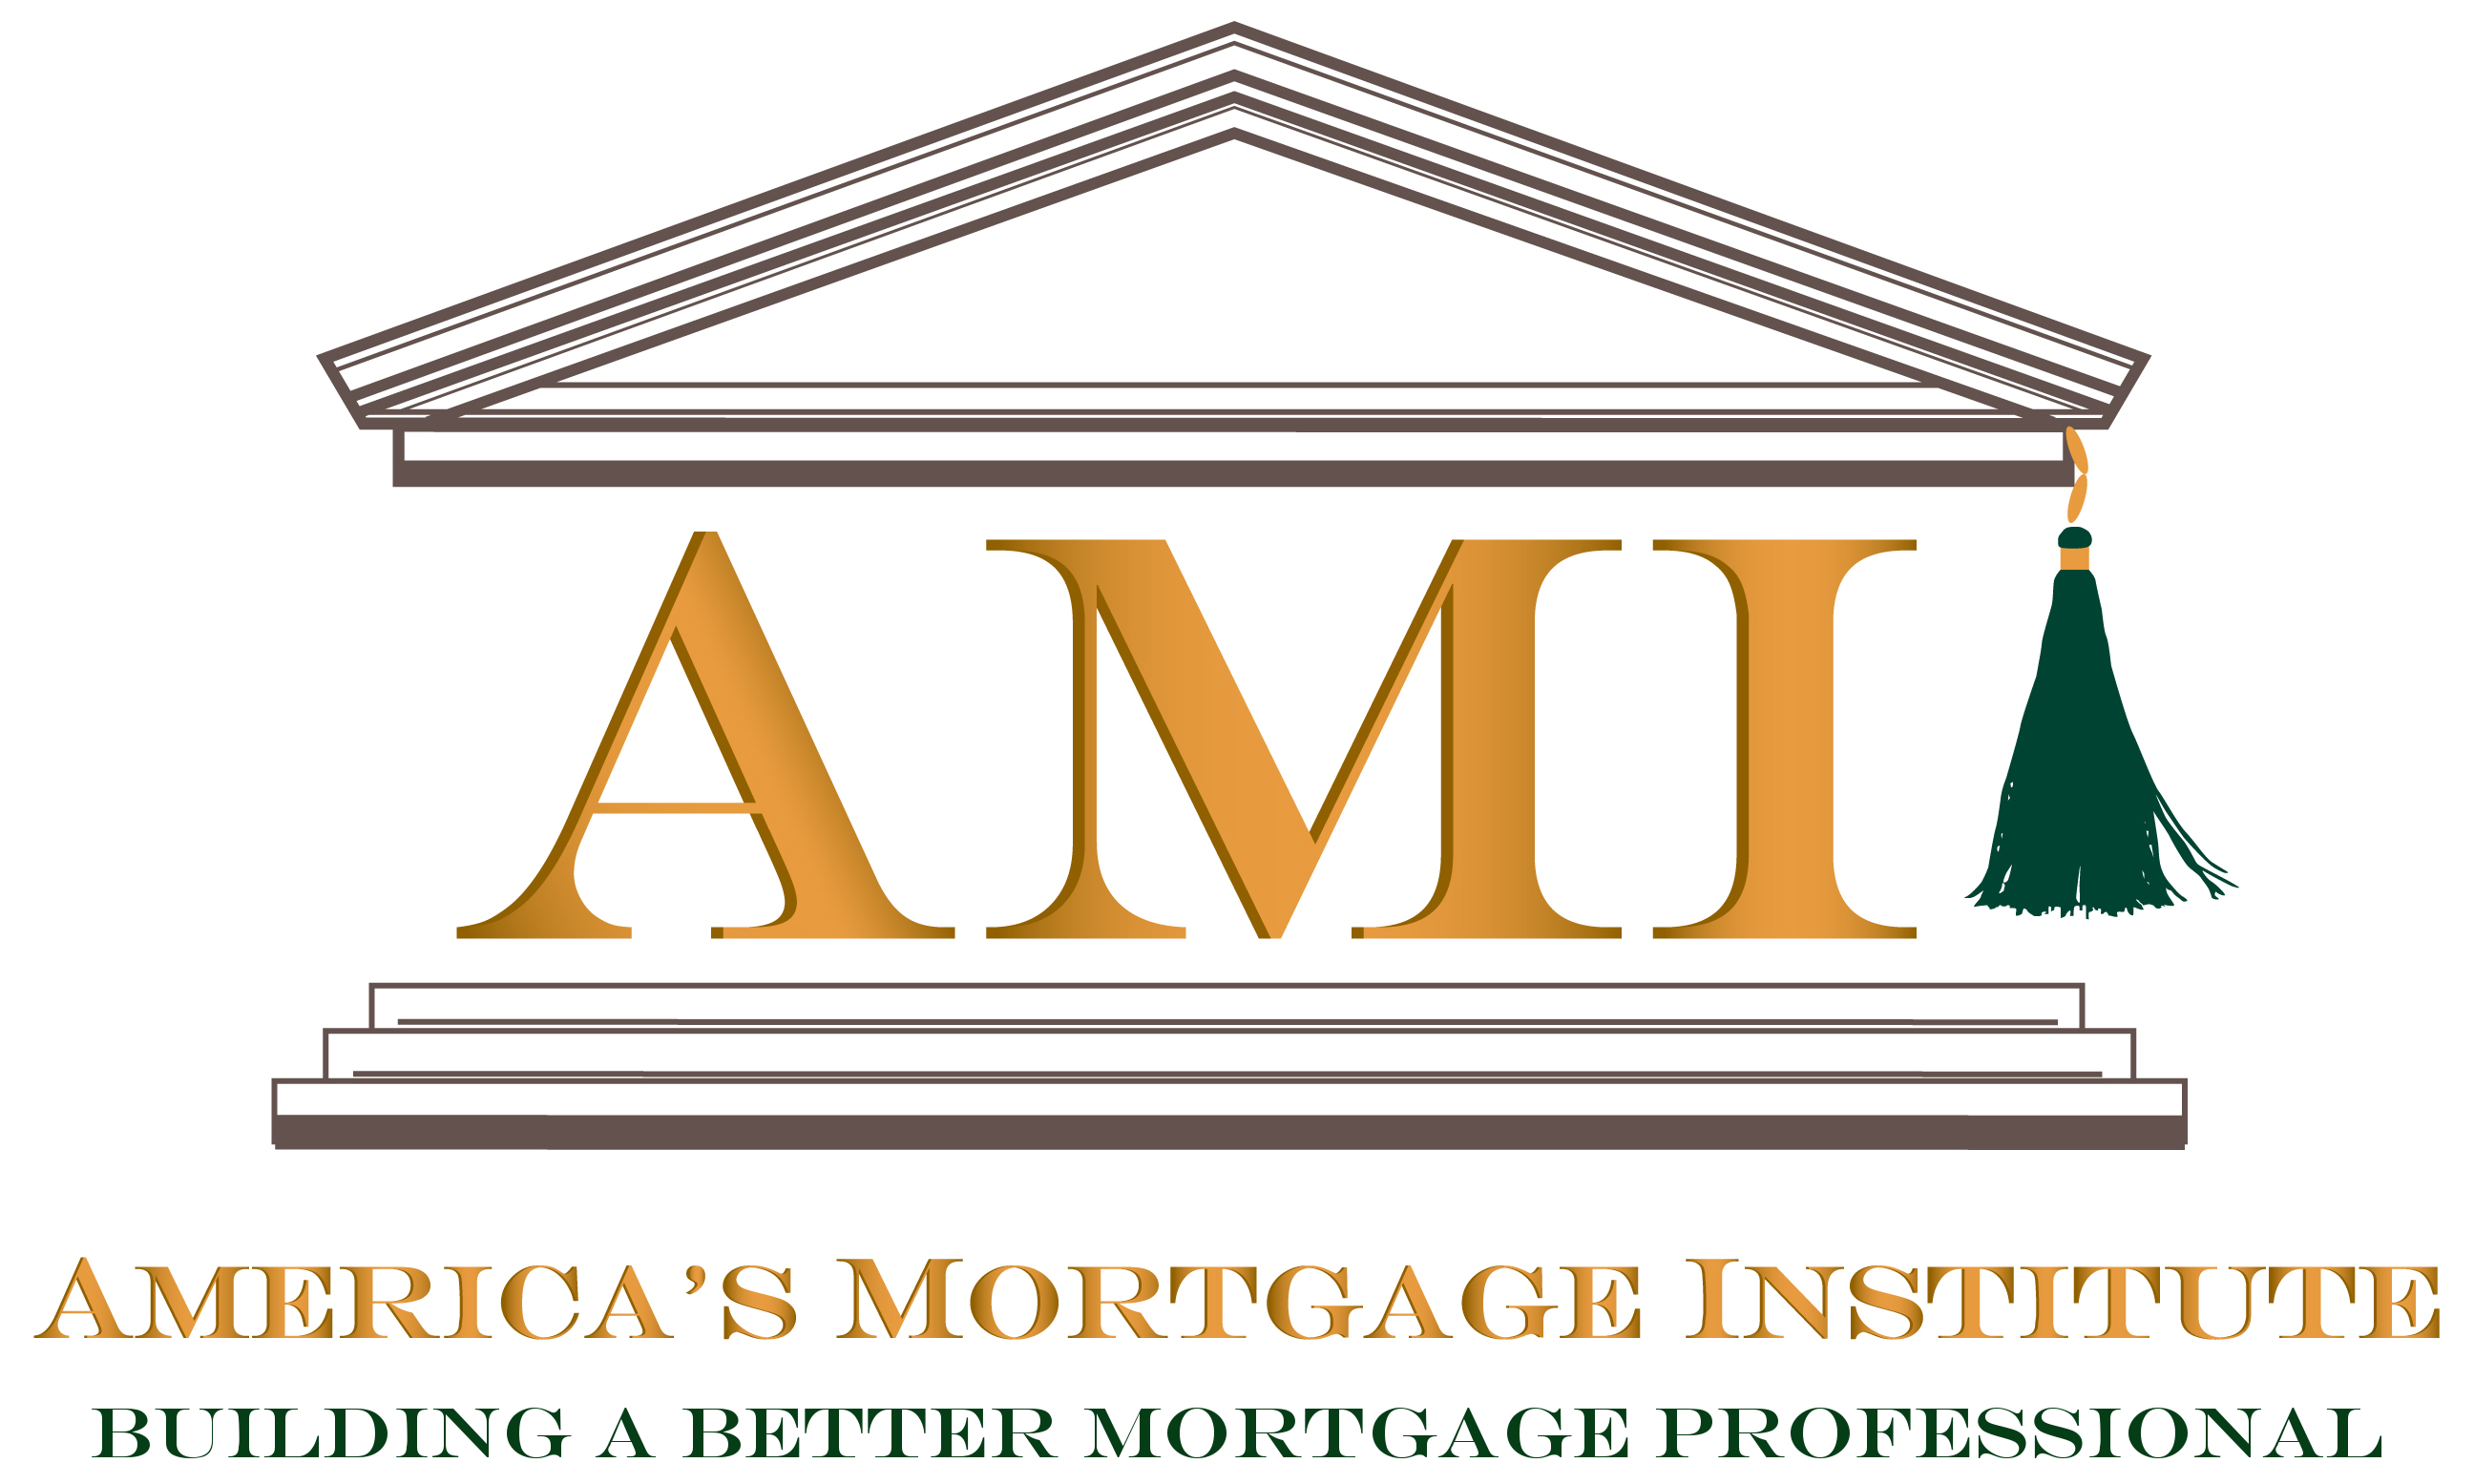 America's Mortgage Institute